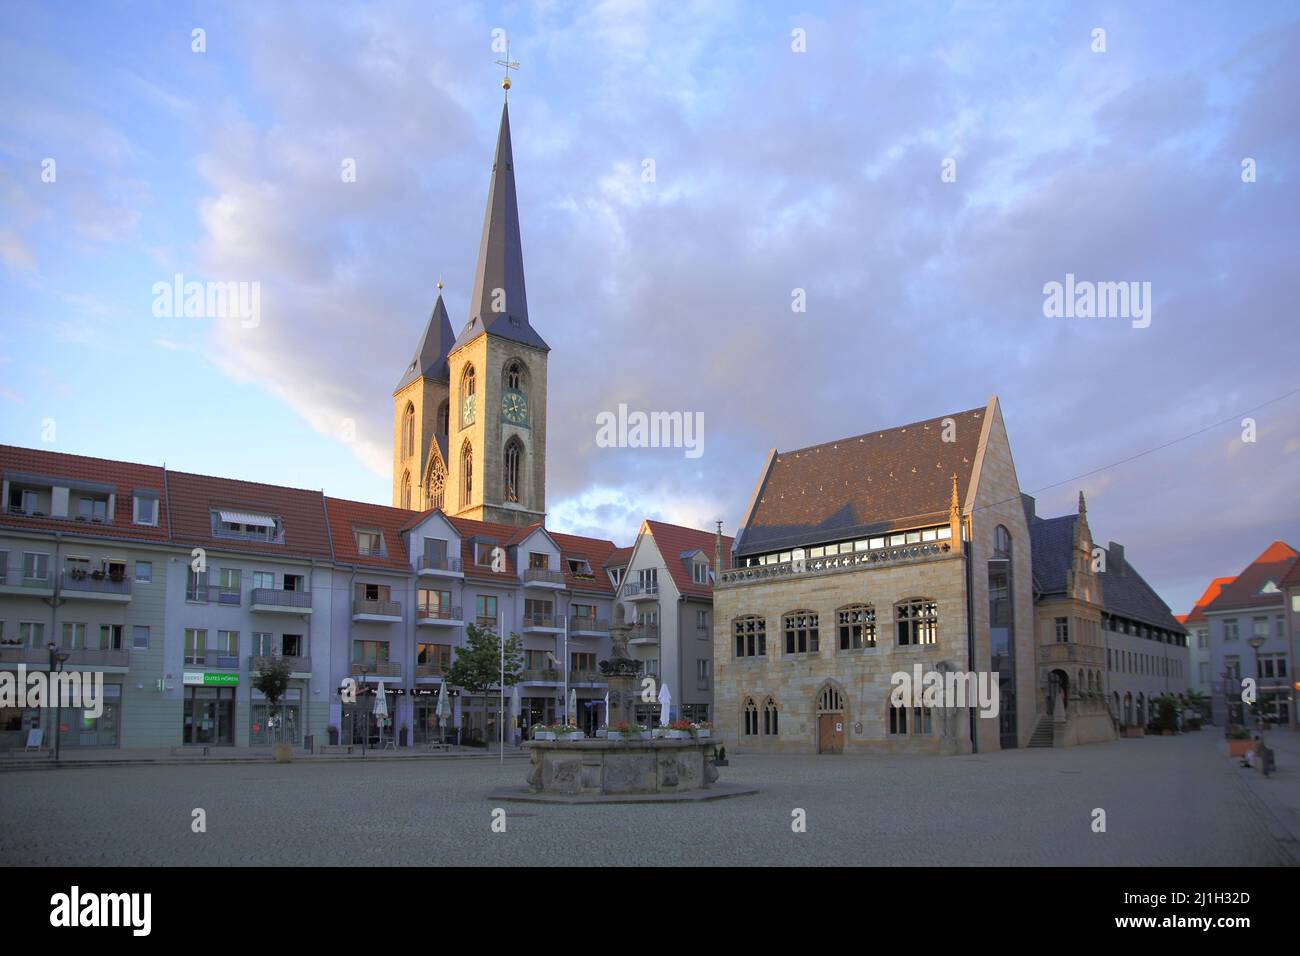 Holzmarkt mit Rathaus und Martinikirche in Halberstadt, Sachsen-Anhalt, Deutschland Stockfoto